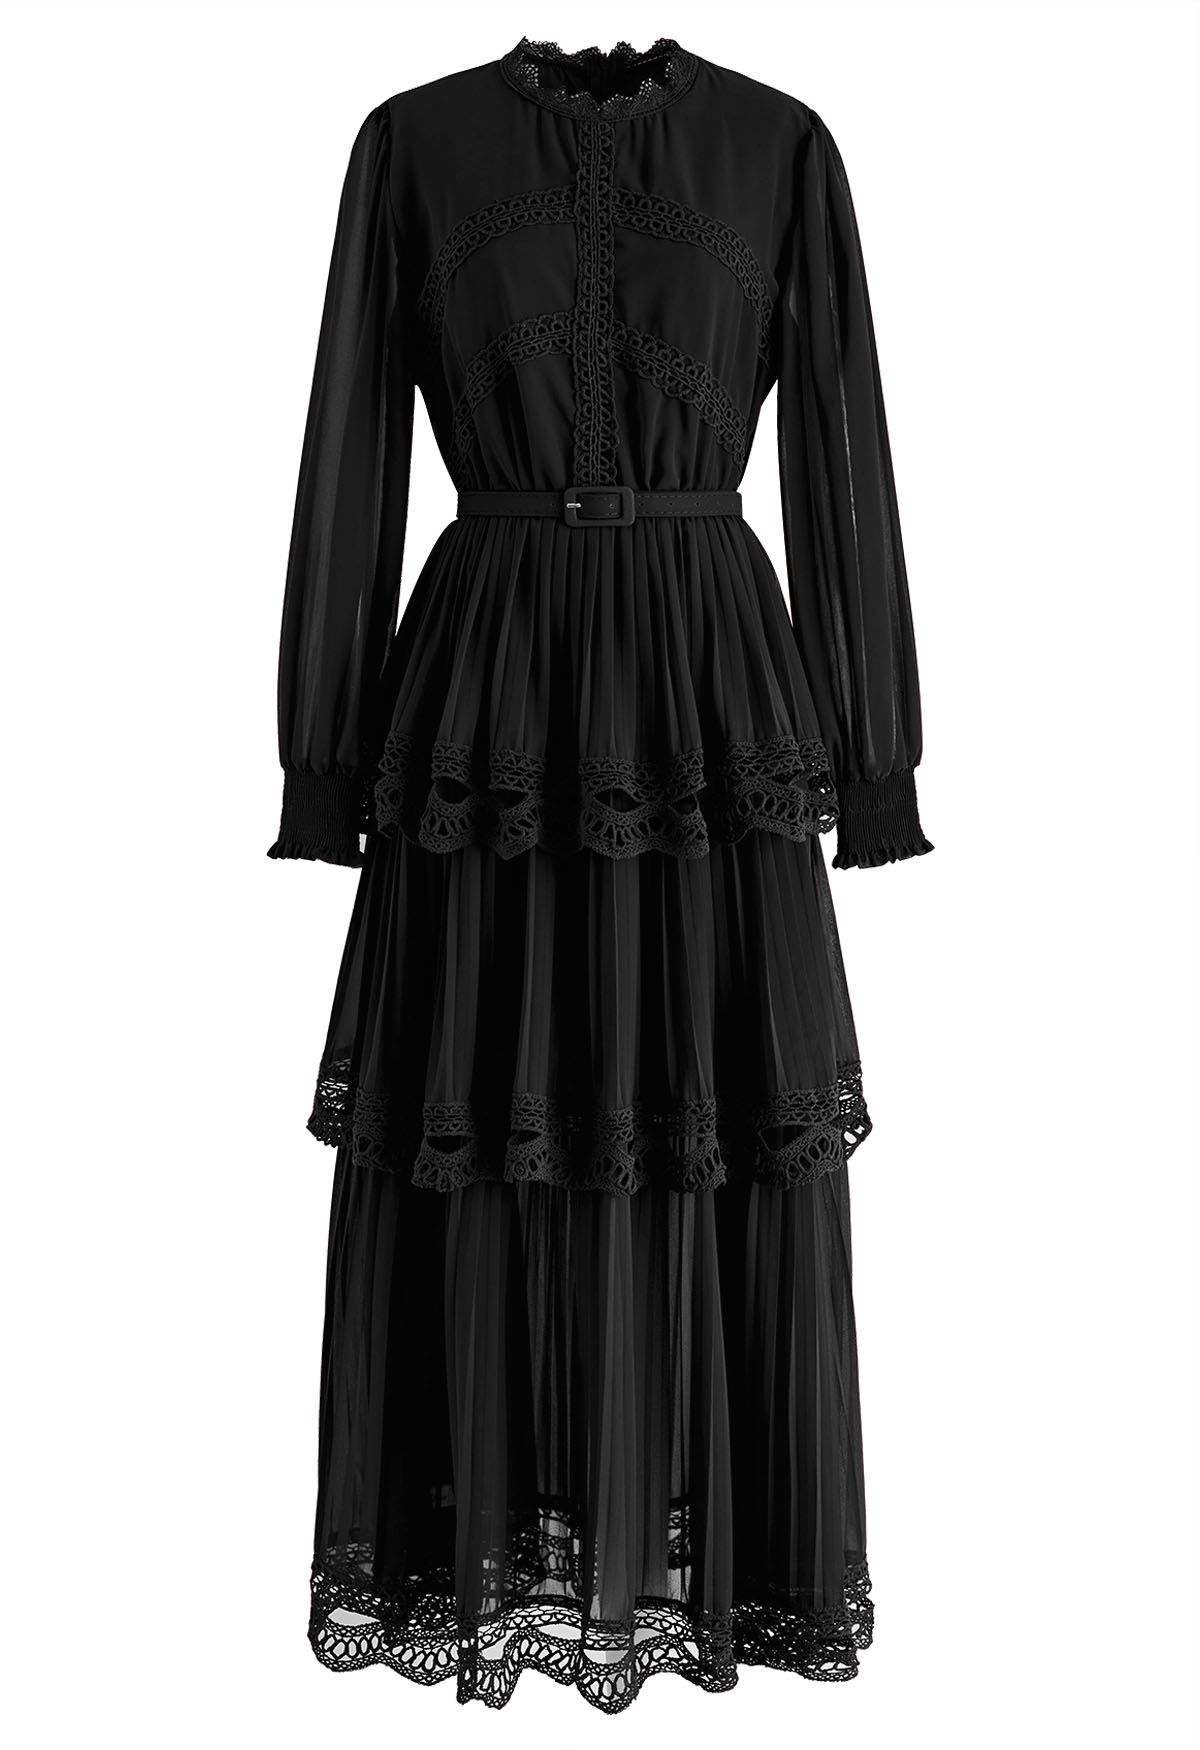 فستان ماكسي شيفون بطيات من الدانتيل الكروشيه باللون الأسود